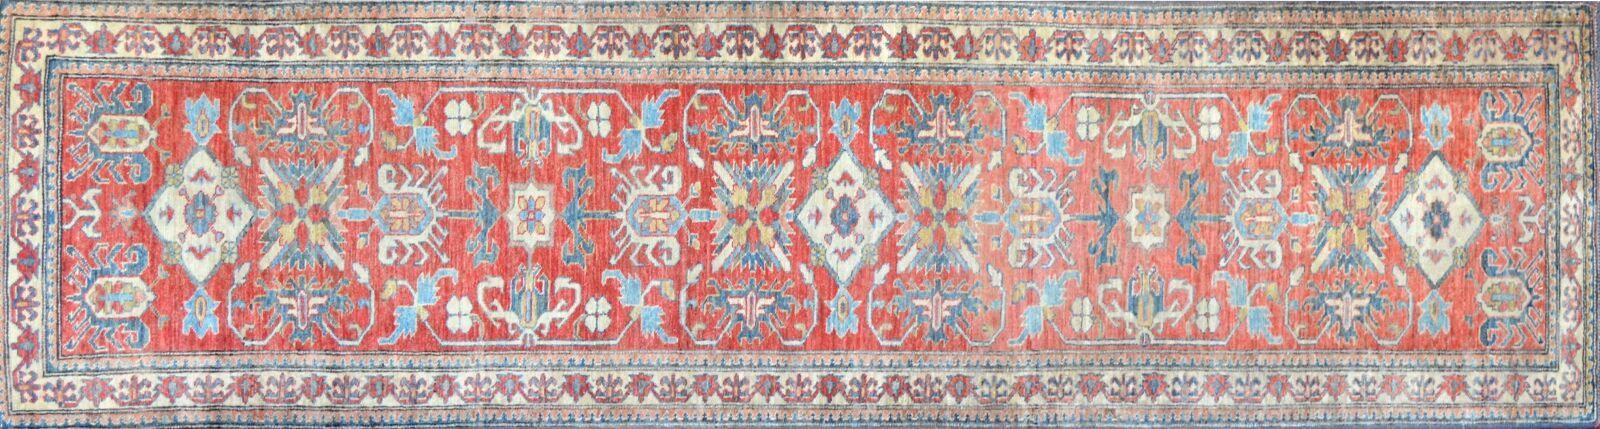 Null Kazak Gallery South Caucasus, ca. 1975

Wool velvet on wool foundation 

Br&hellip;